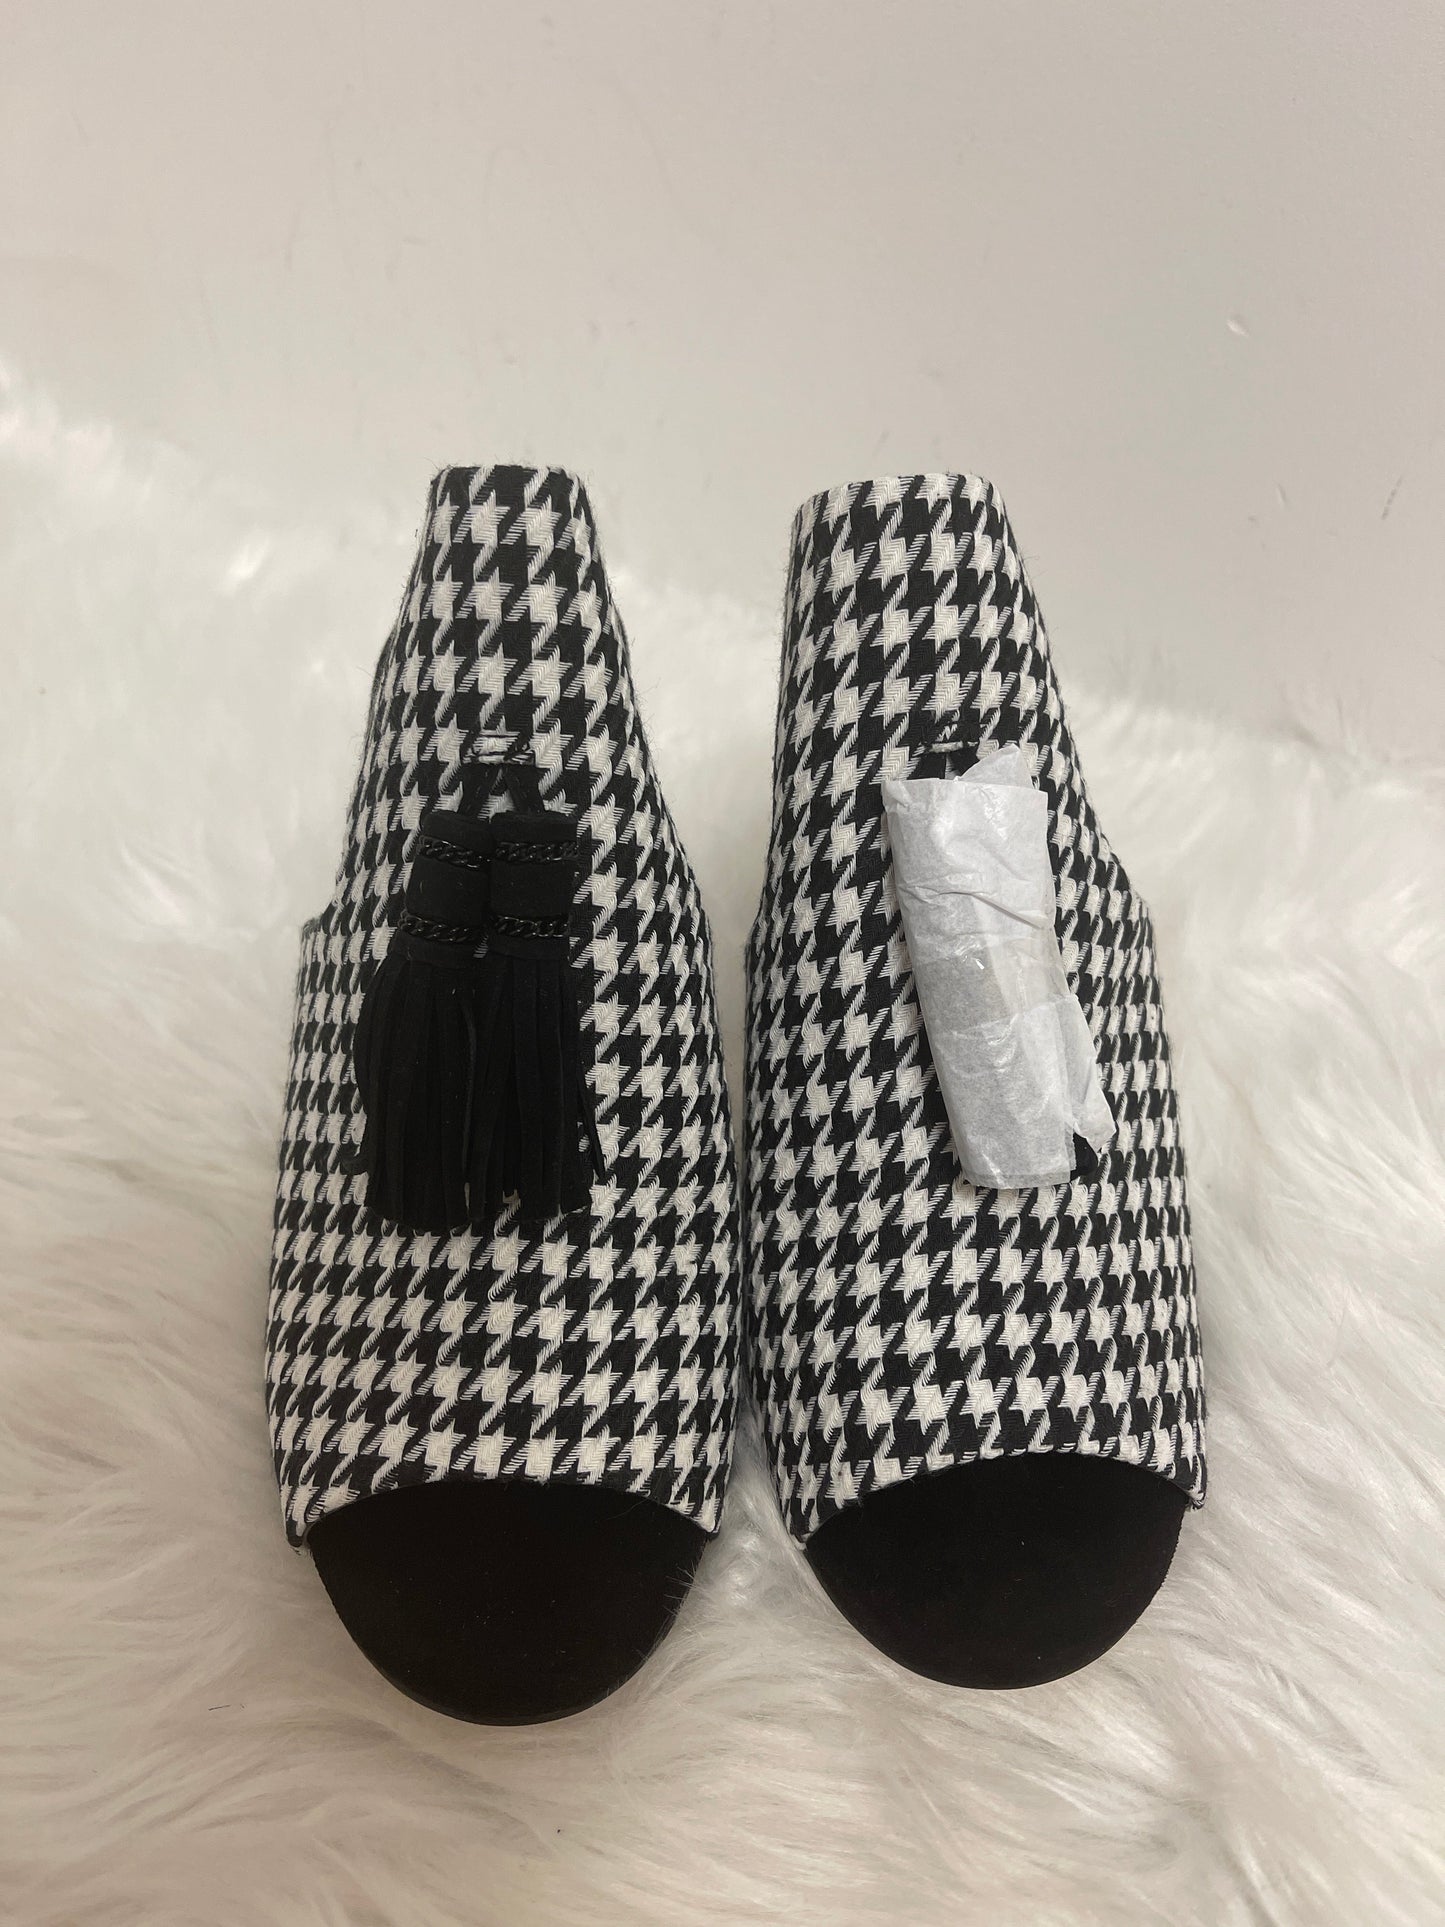 Black & White Shoes Designer Karl Lagerfeld, Size 6.5